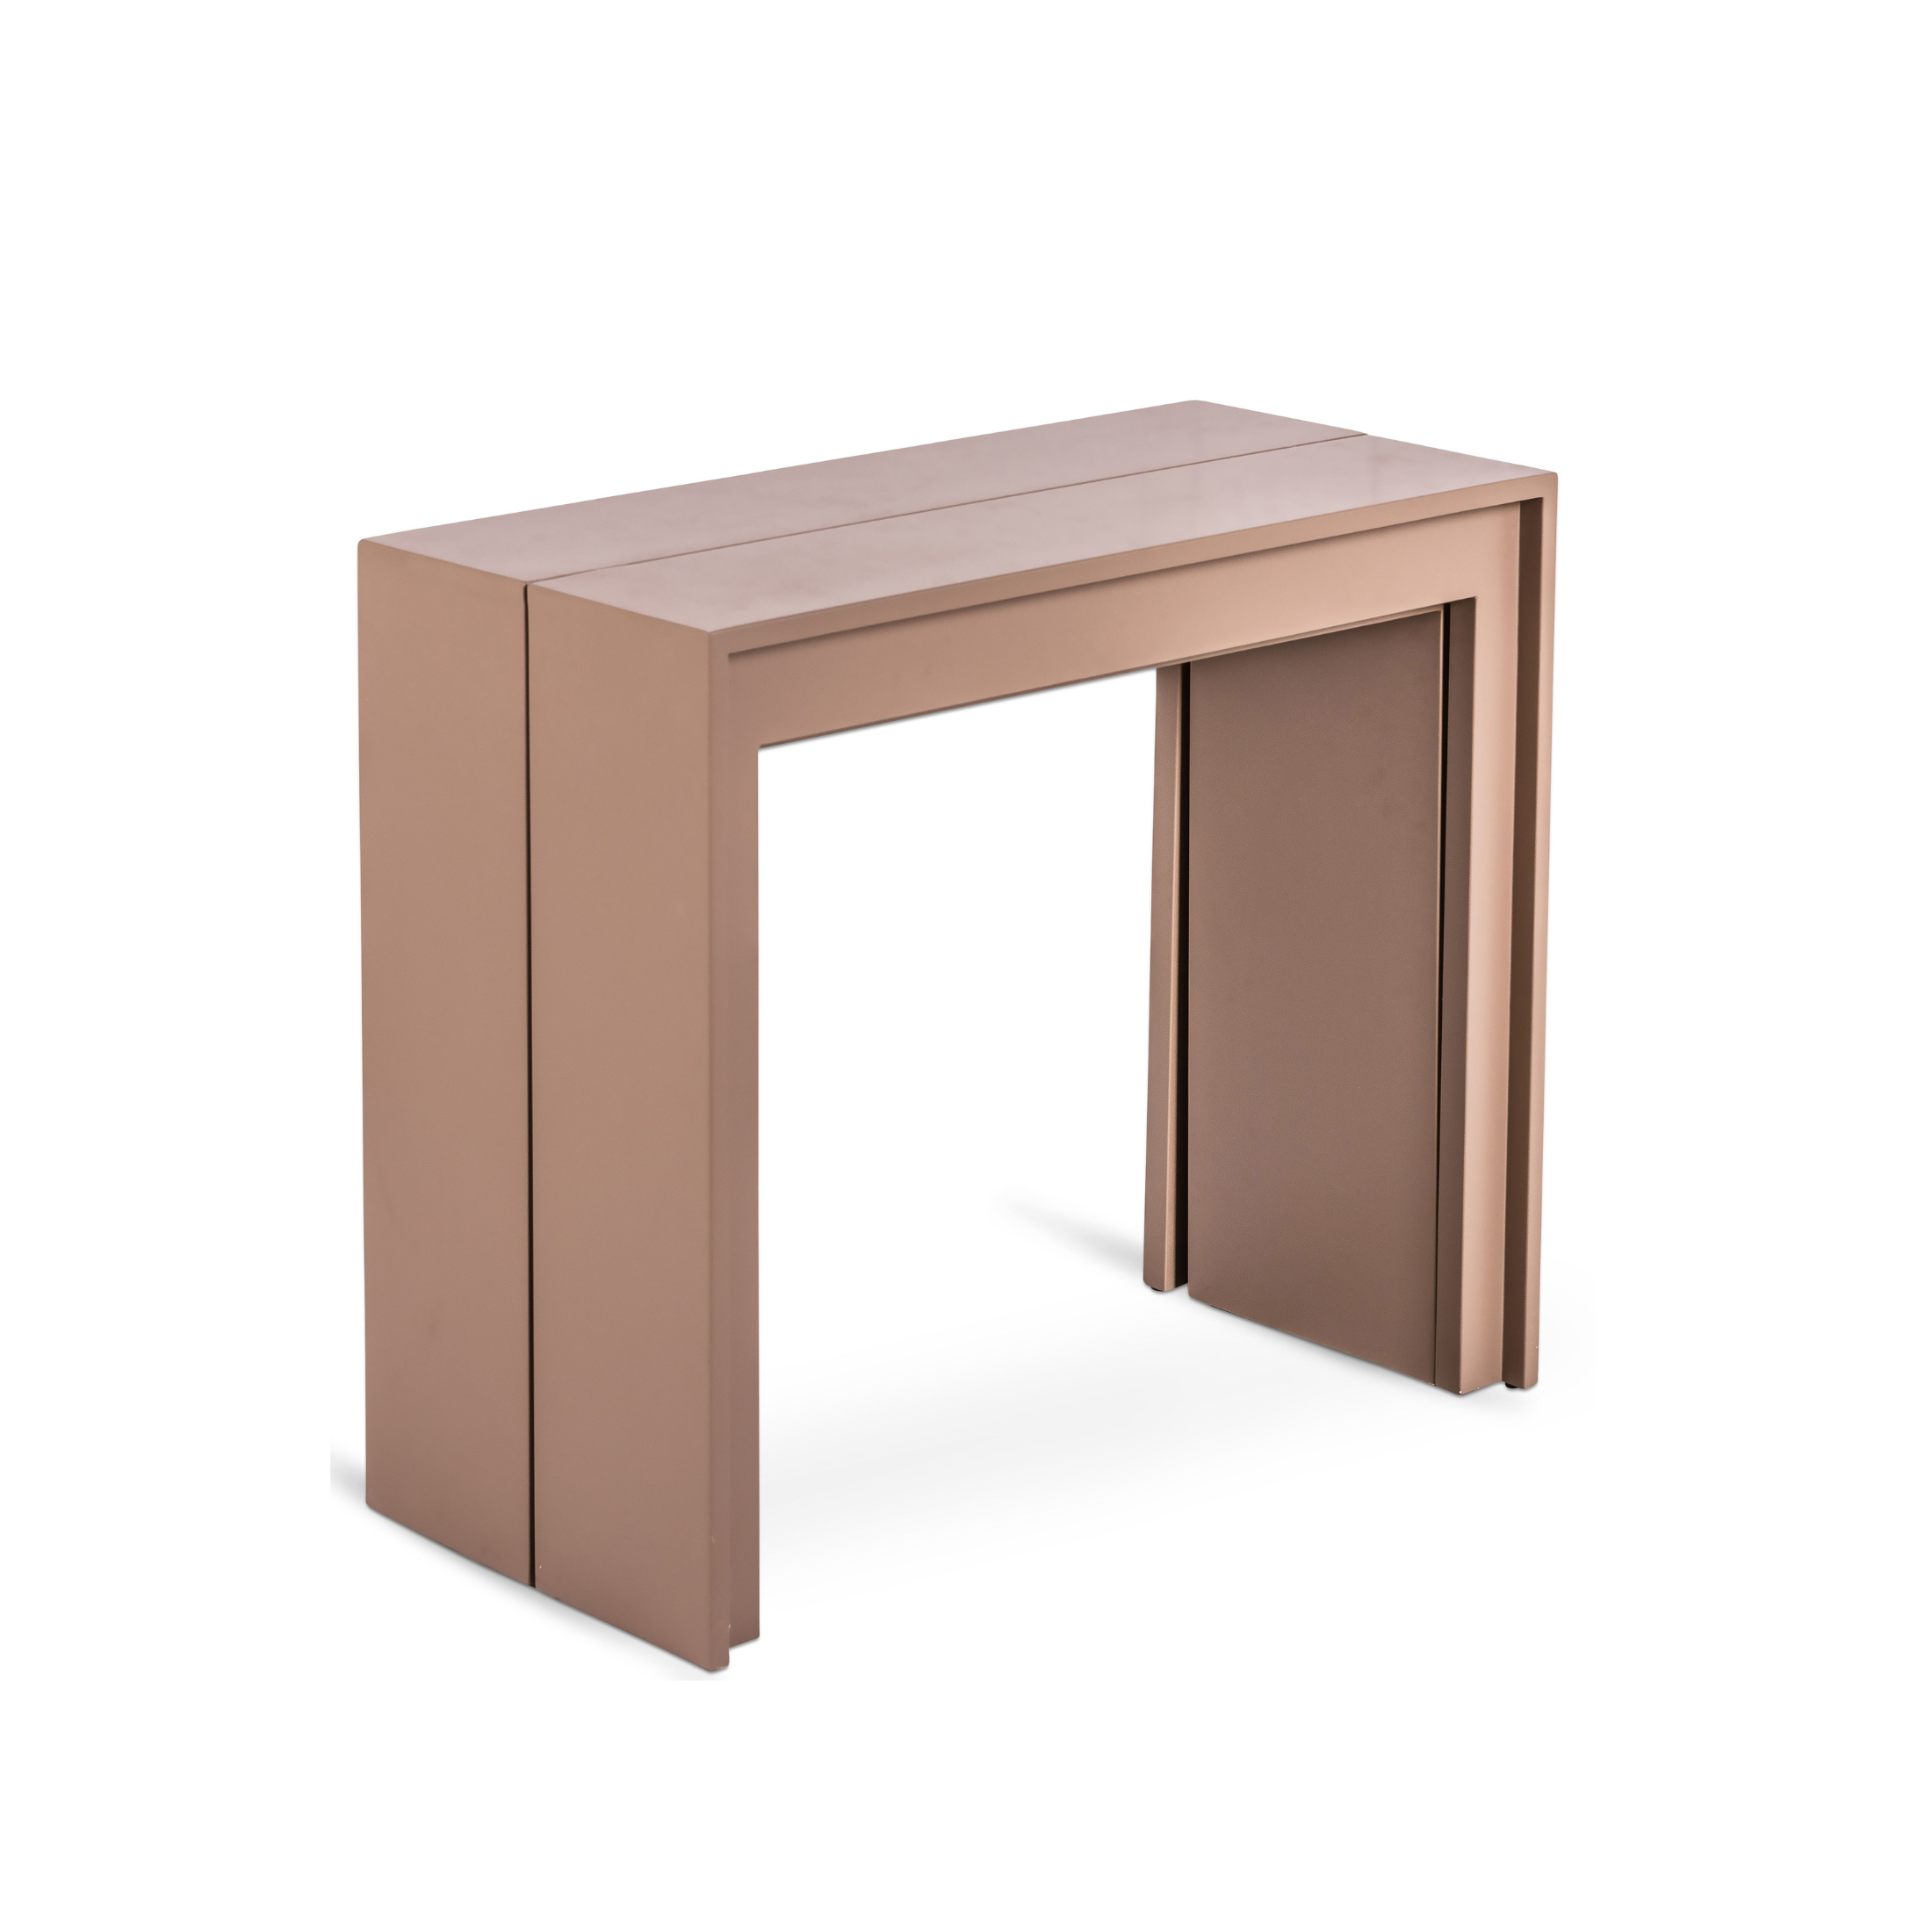 Table console extensible "Pinocchio" en bois laqué, 10 places, 43/302x90 cm 76h